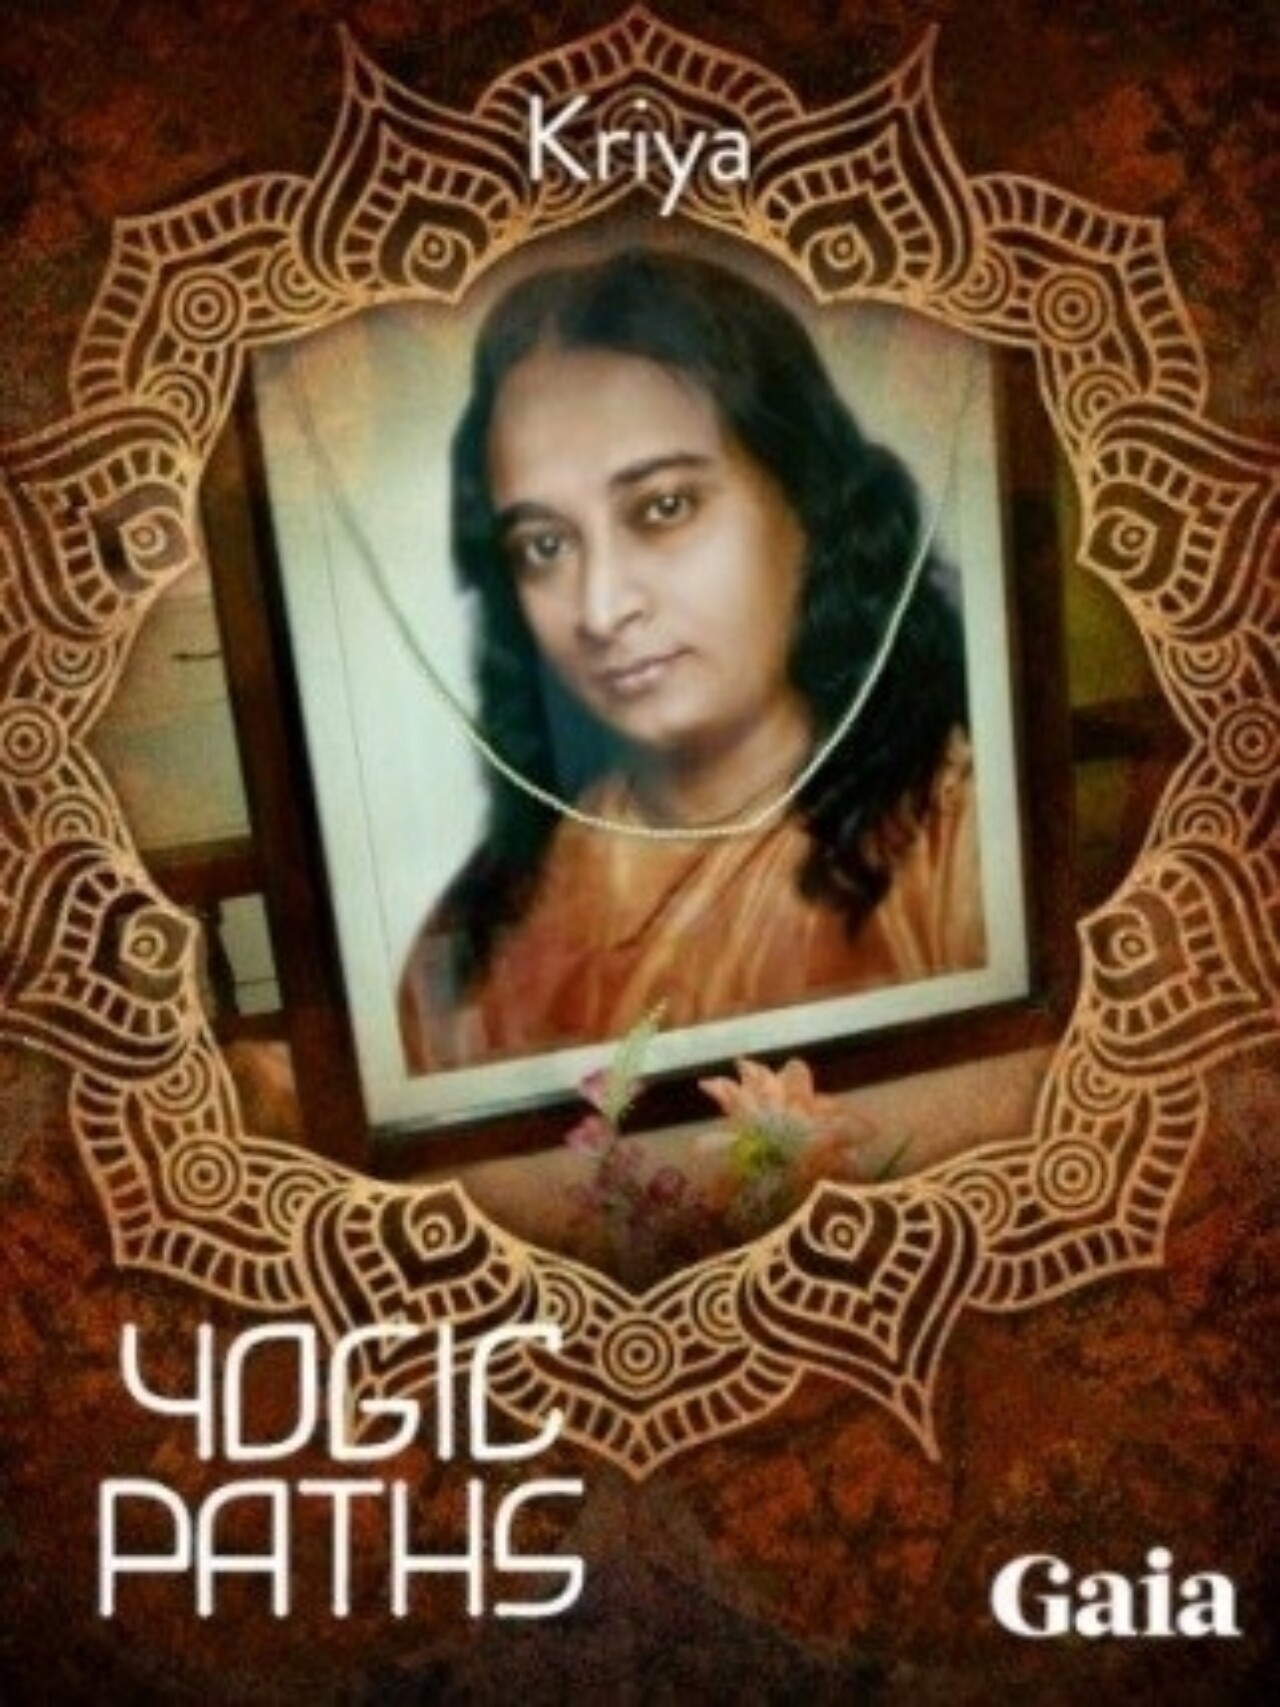 Kriya yoga featured on Yogic Paths